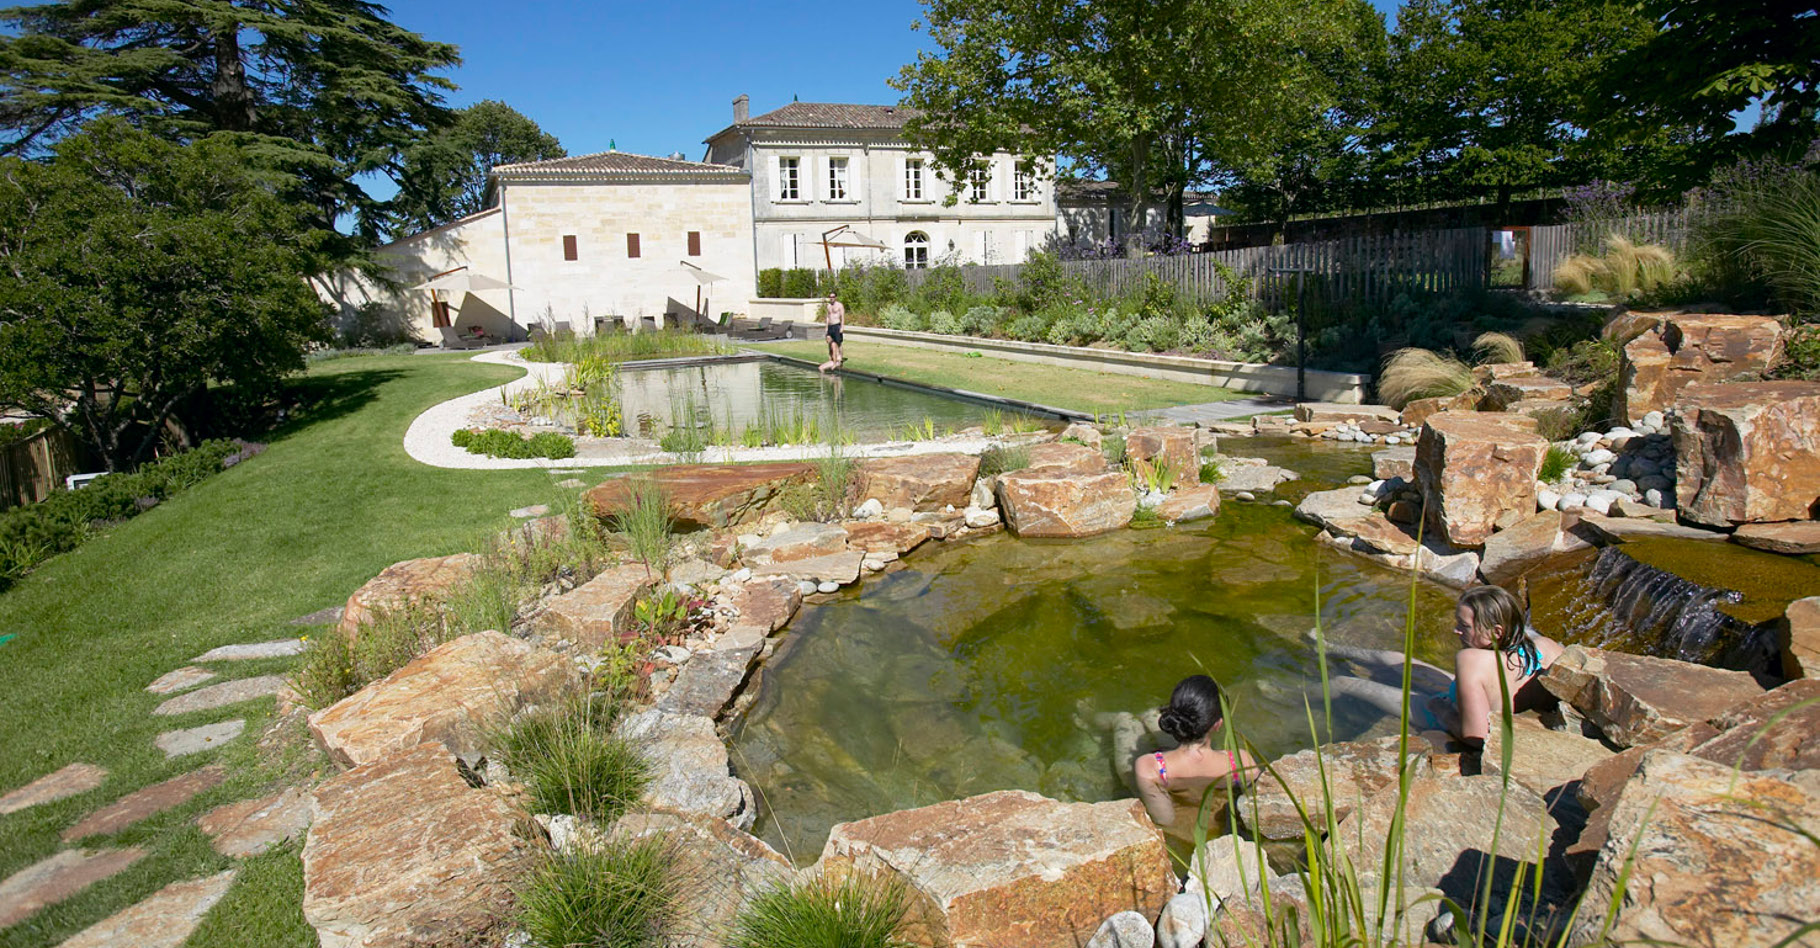 La piscine écologique du château Franc Mayne. © SunSD, Wikimedia Commons, CC by-sa 3.0